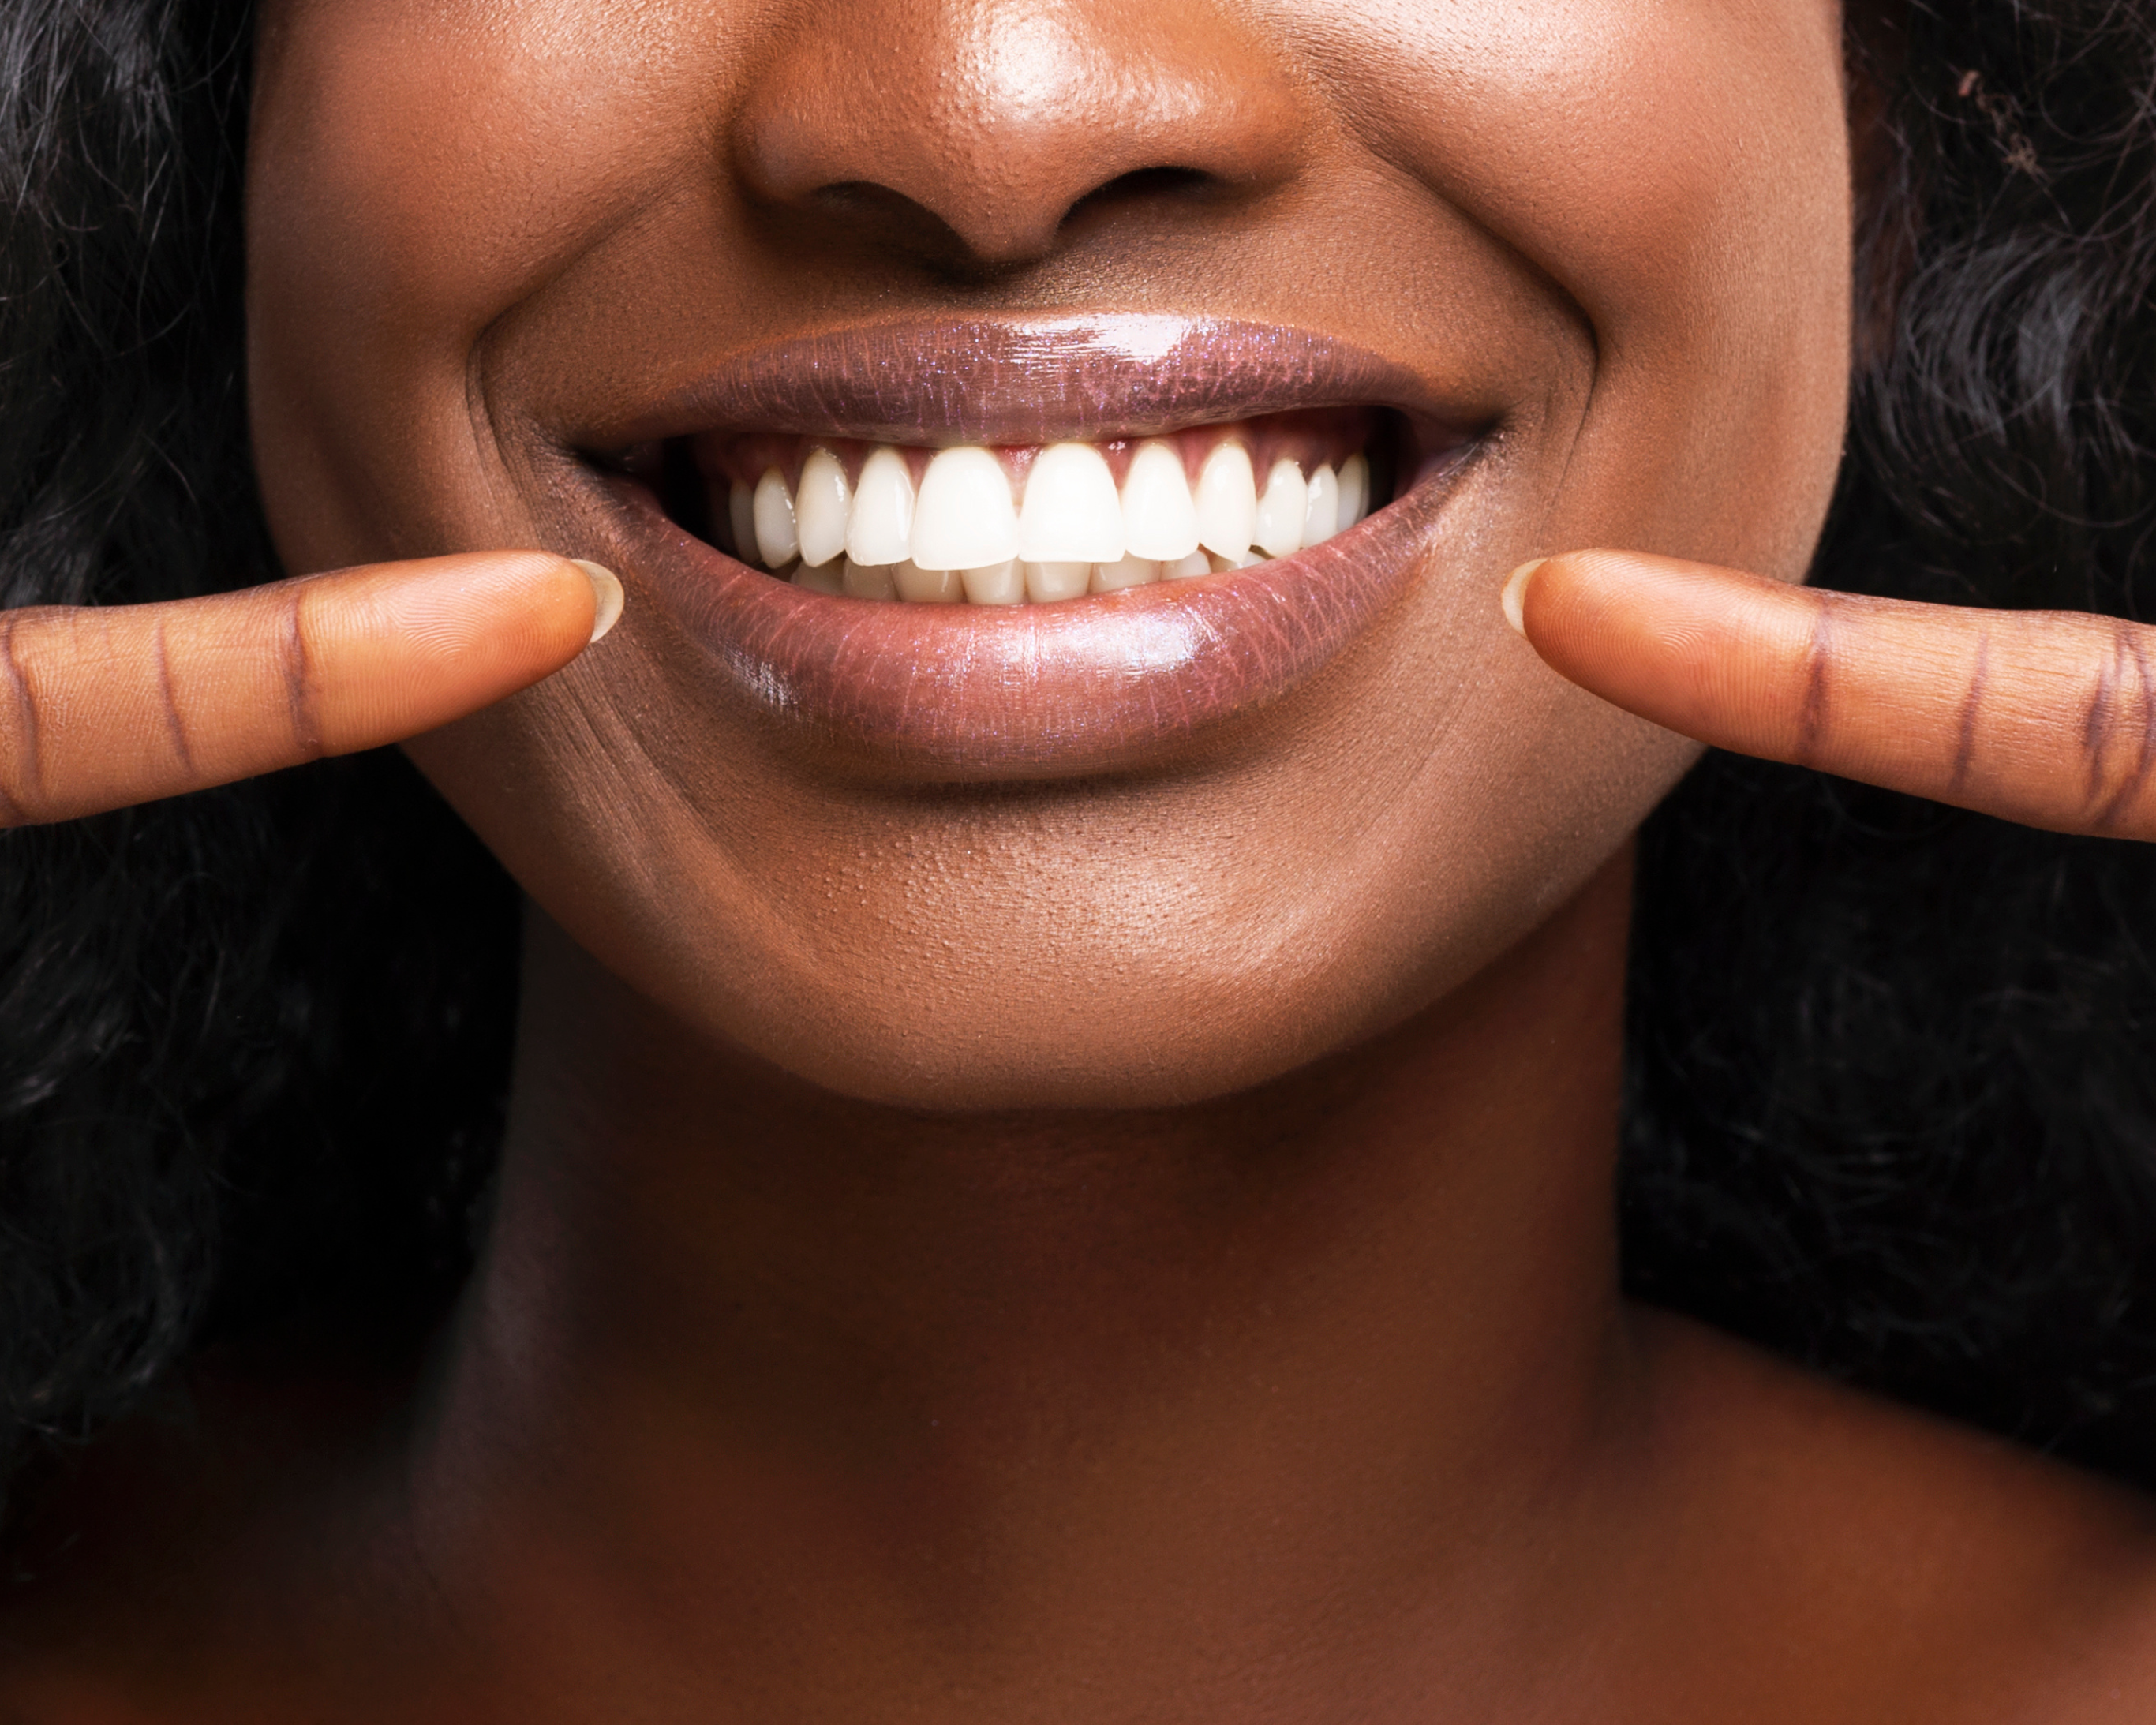 Ölziehen: Diese Vorteile bringt es für Deine Zahngesundheit